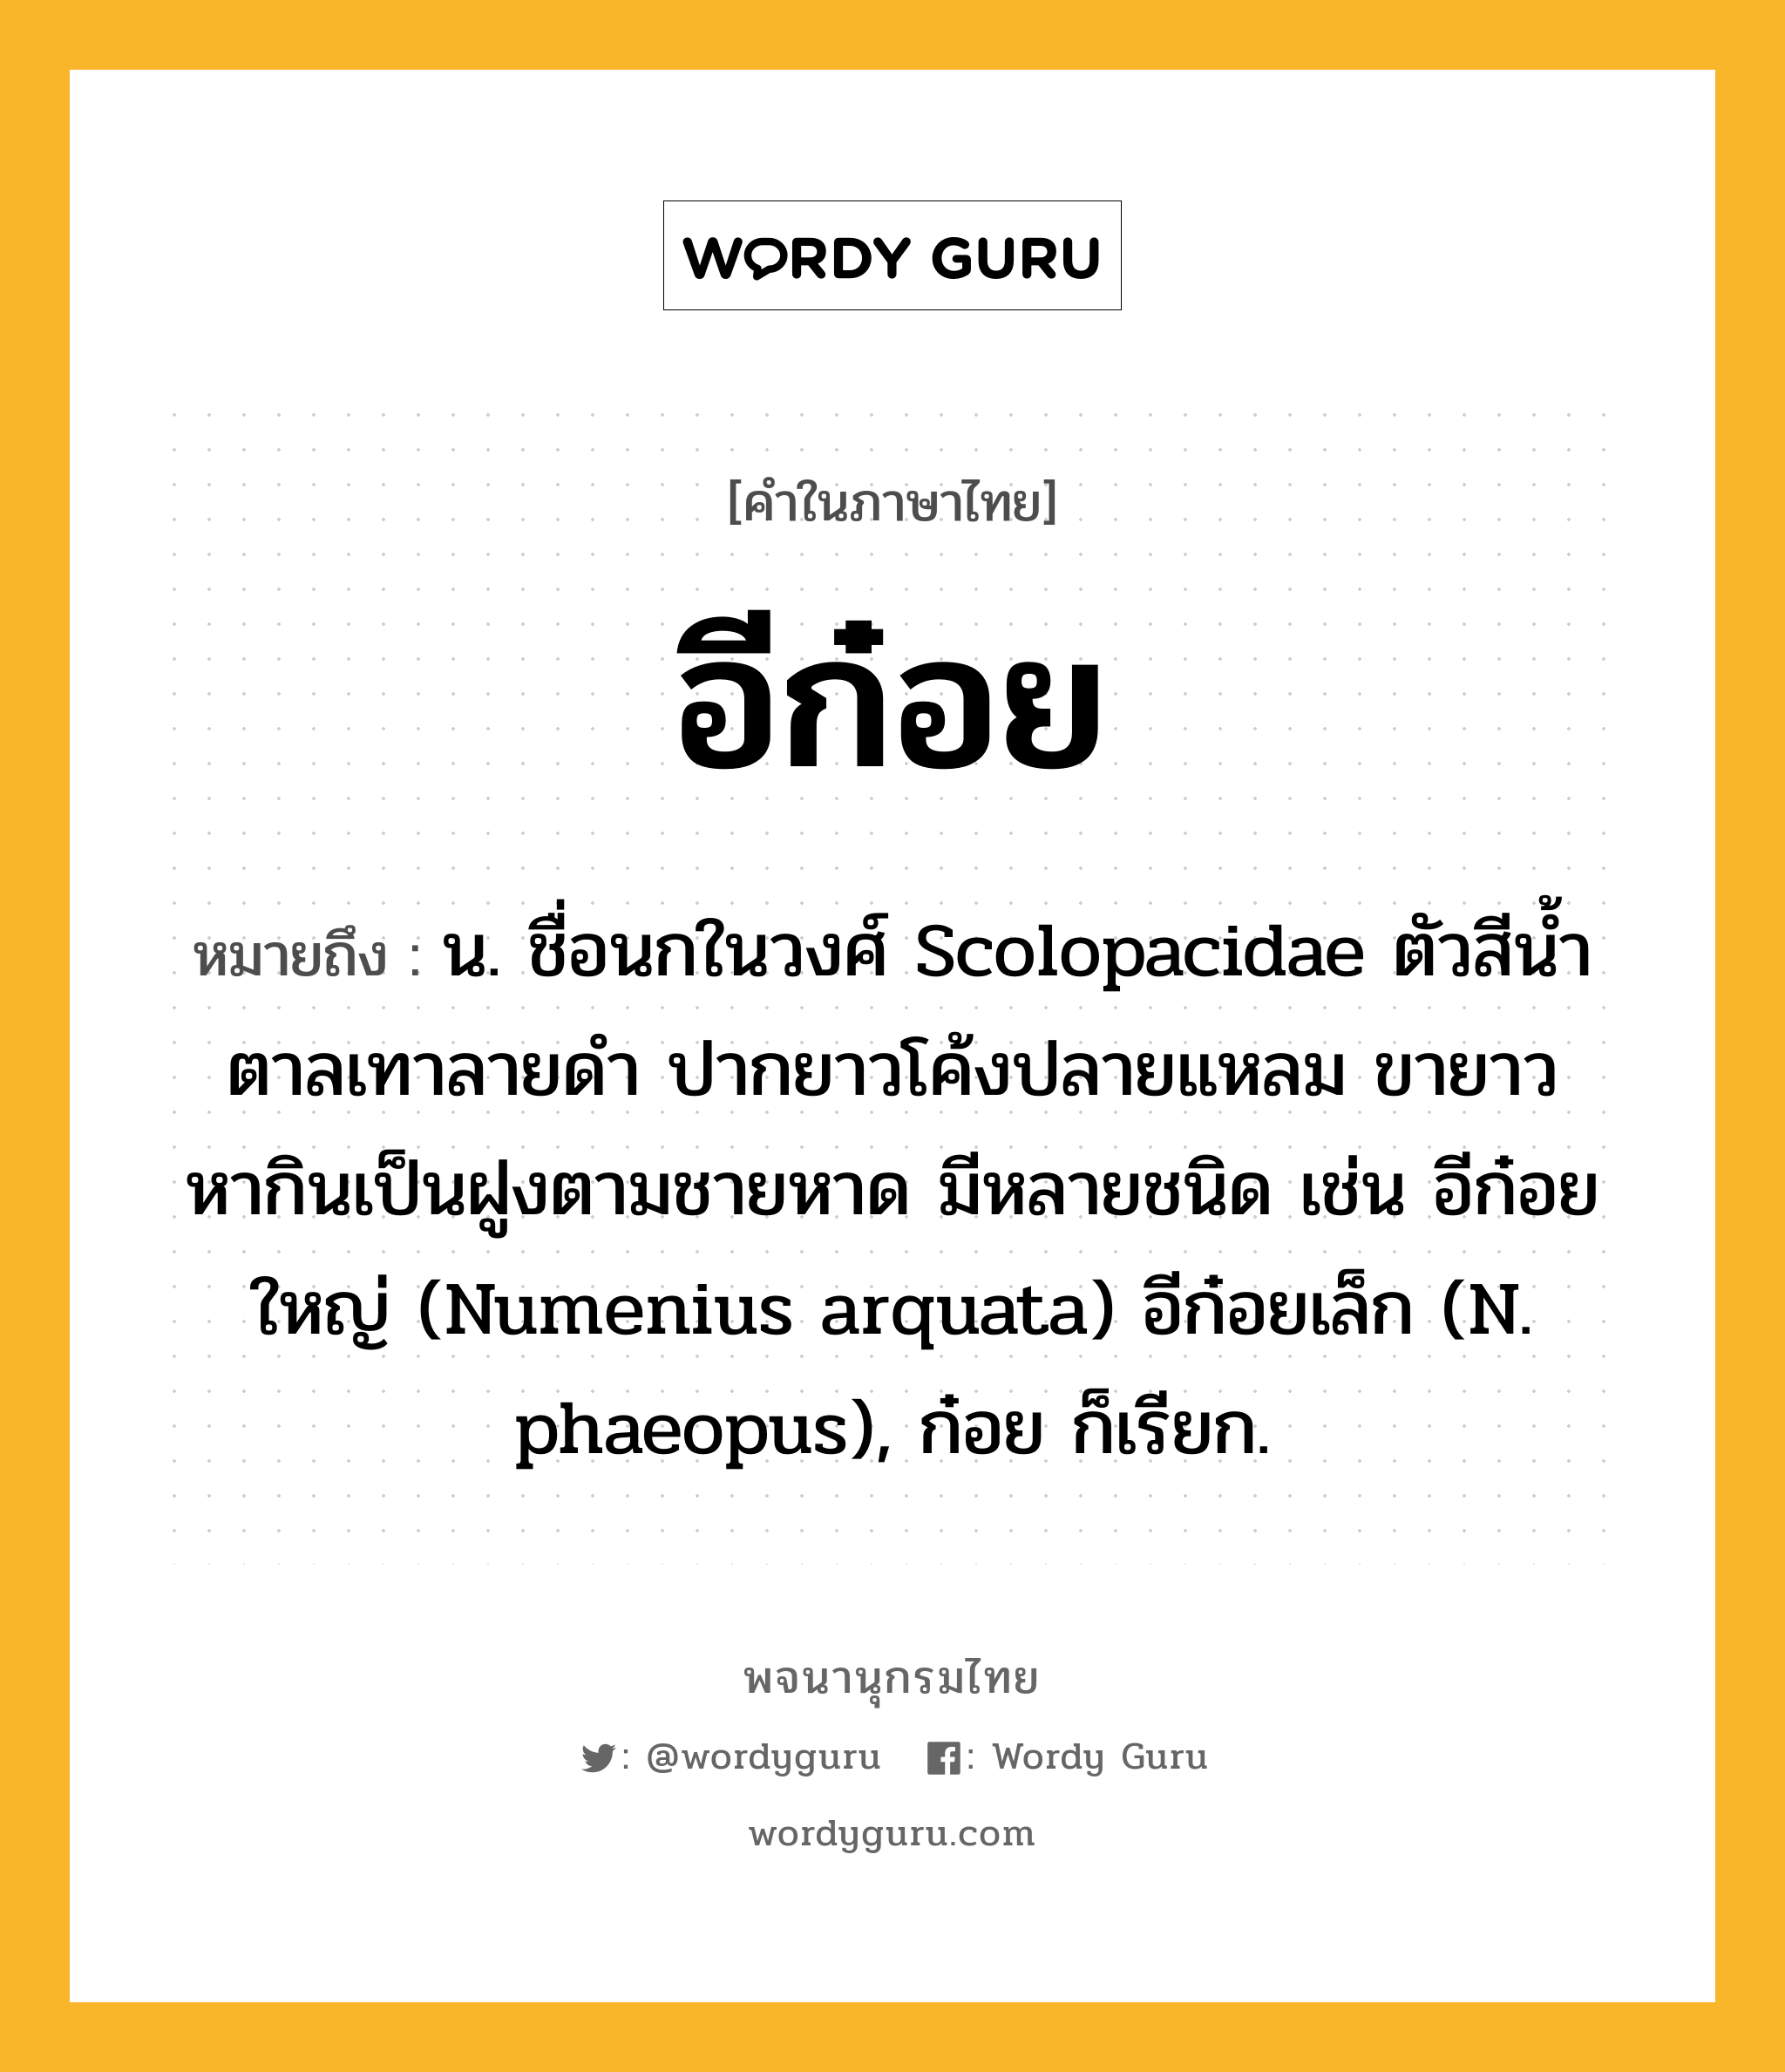 อีก๋อย ความหมาย หมายถึงอะไร?, คำในภาษาไทย อีก๋อย หมายถึง น. ชื่อนกในวงศ์ Scolopacidae ตัวสีนํ้าตาลเทาลายดํา ปากยาวโค้งปลายแหลม ขายาว หากินเป็นฝูงตามชายหาด มีหลายชนิด เช่น อีก๋อยใหญ่ (Numenius arquata) อีก๋อยเล็ก (N. phaeopus), ก๋อย ก็เรียก.